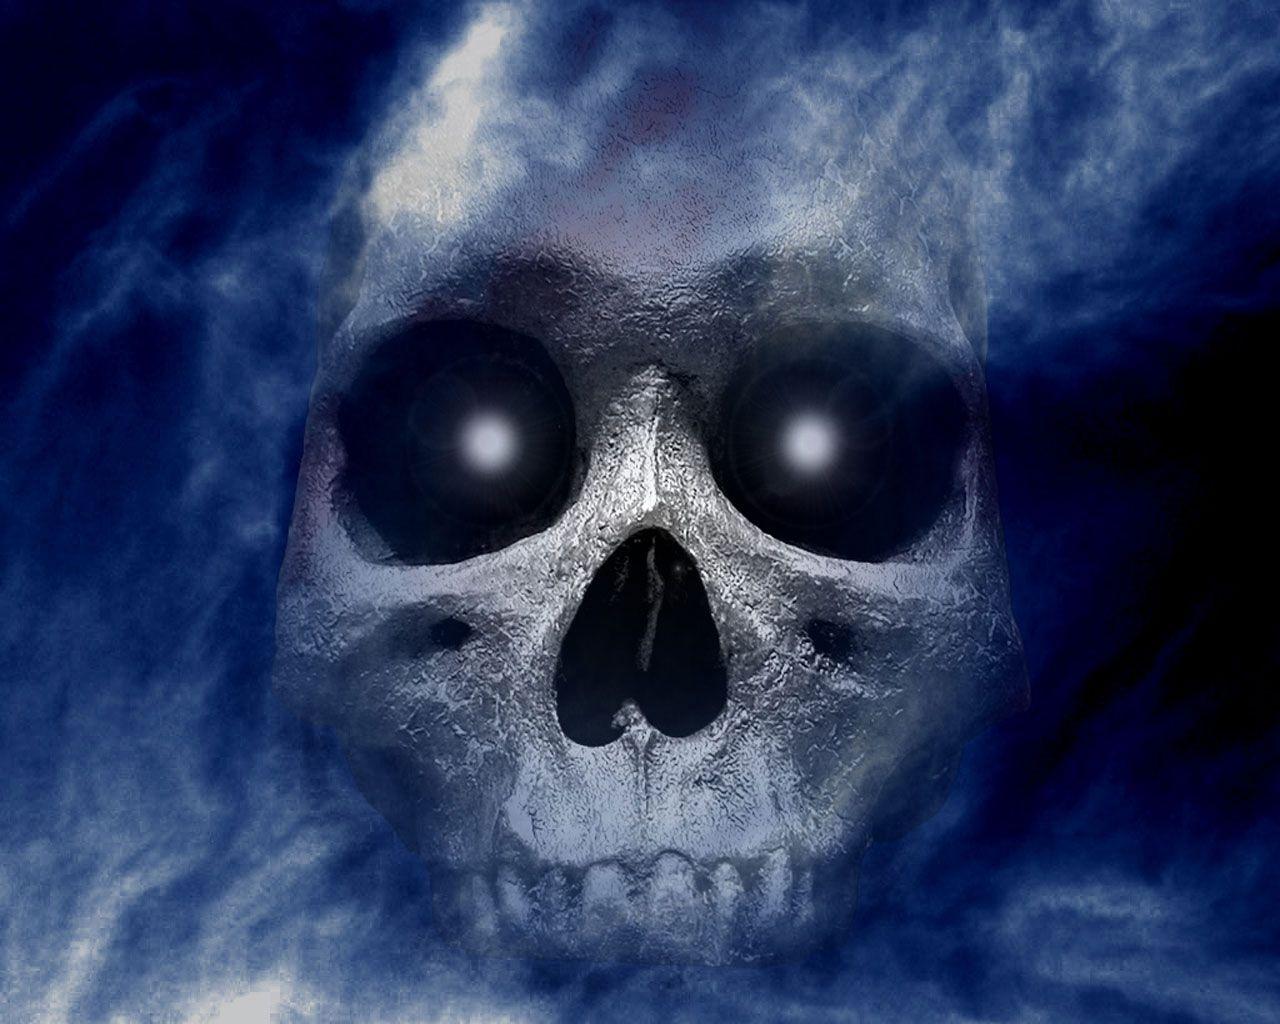 3D Skull Wallpapers - Wallpaper Cave 3d Skull Wallpaper Hd